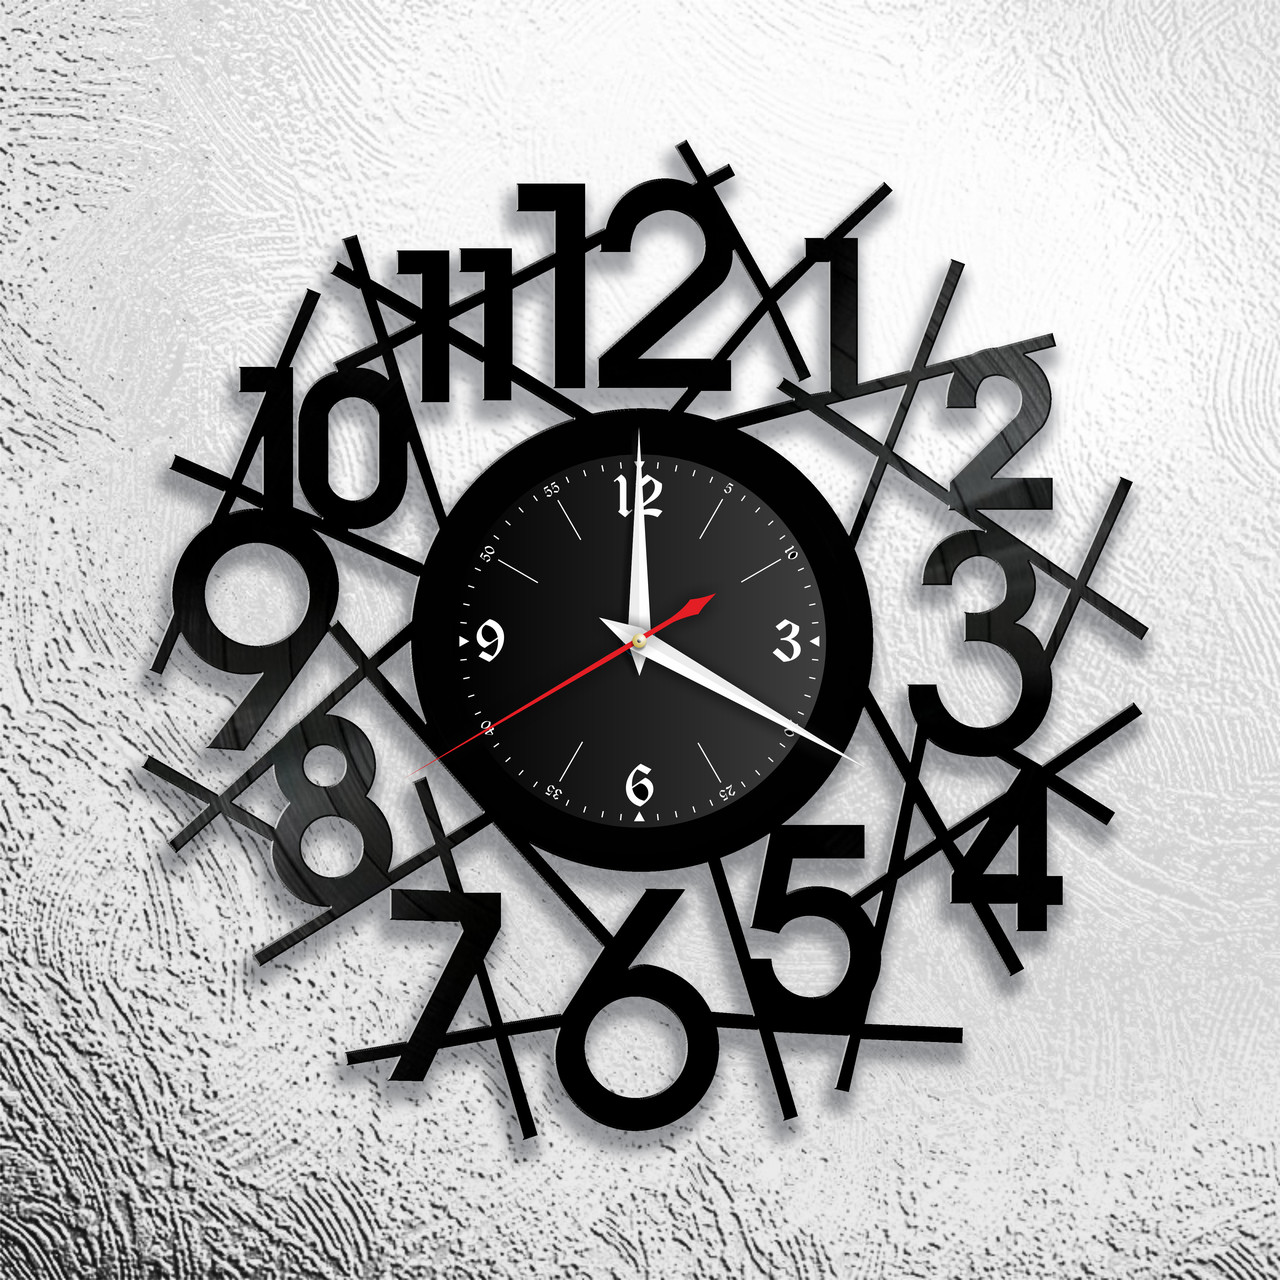 Оригинальные часы из виниловых пластинок "Цифры" Версия 7, фото 1